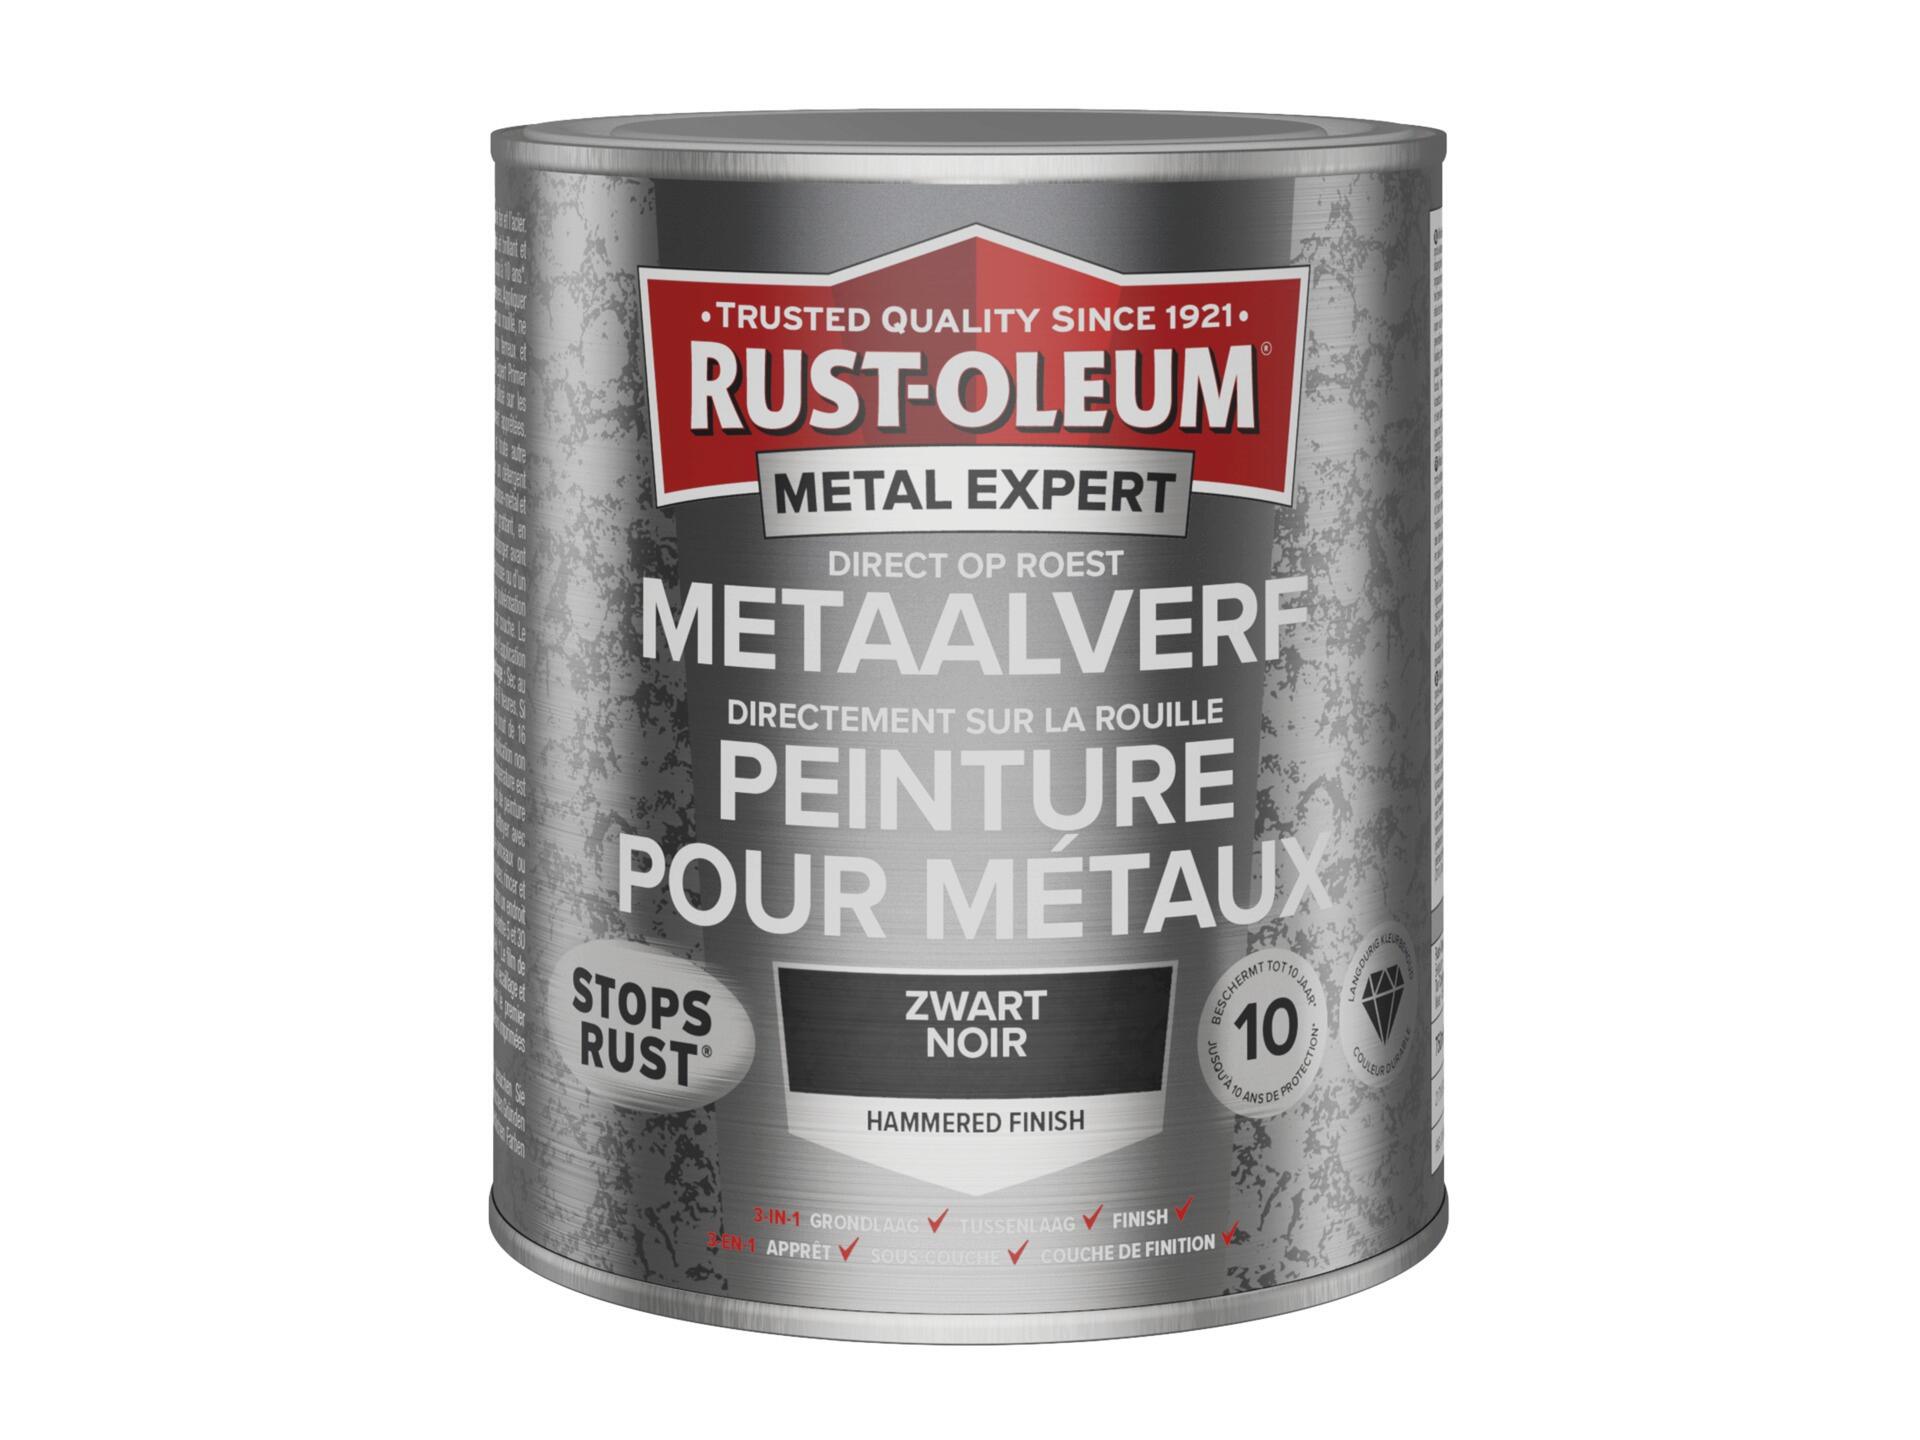 Rust-oleum Metal Expert peinture pour métaux martelé 750ml noir